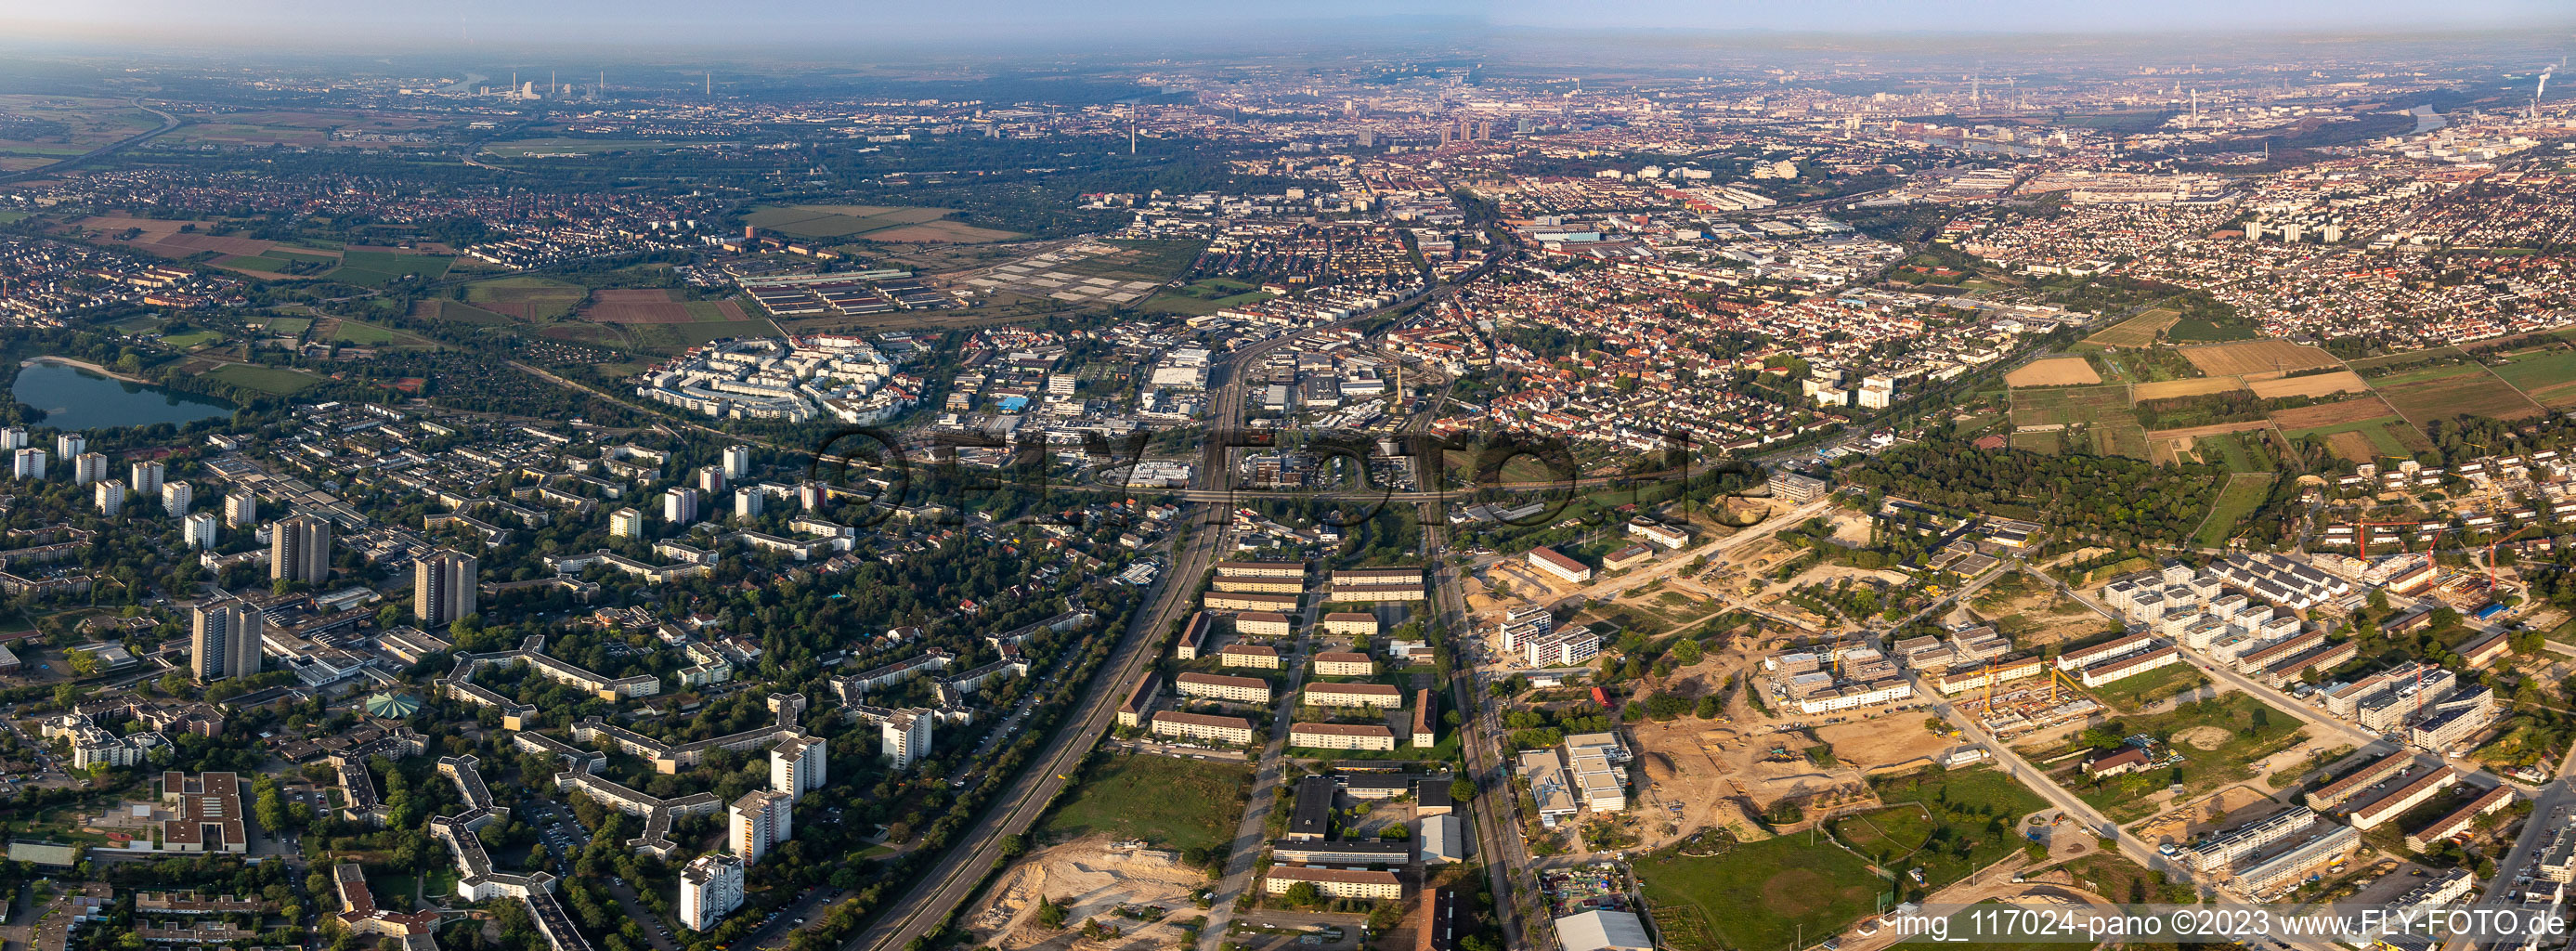 Vue aérienne de Vue d'ensemble entre Vogelstang et Käfertal de la zone urbaine avec périphérie à le quartier Käfertal in Mannheim dans le département Bade-Wurtemberg, Allemagne